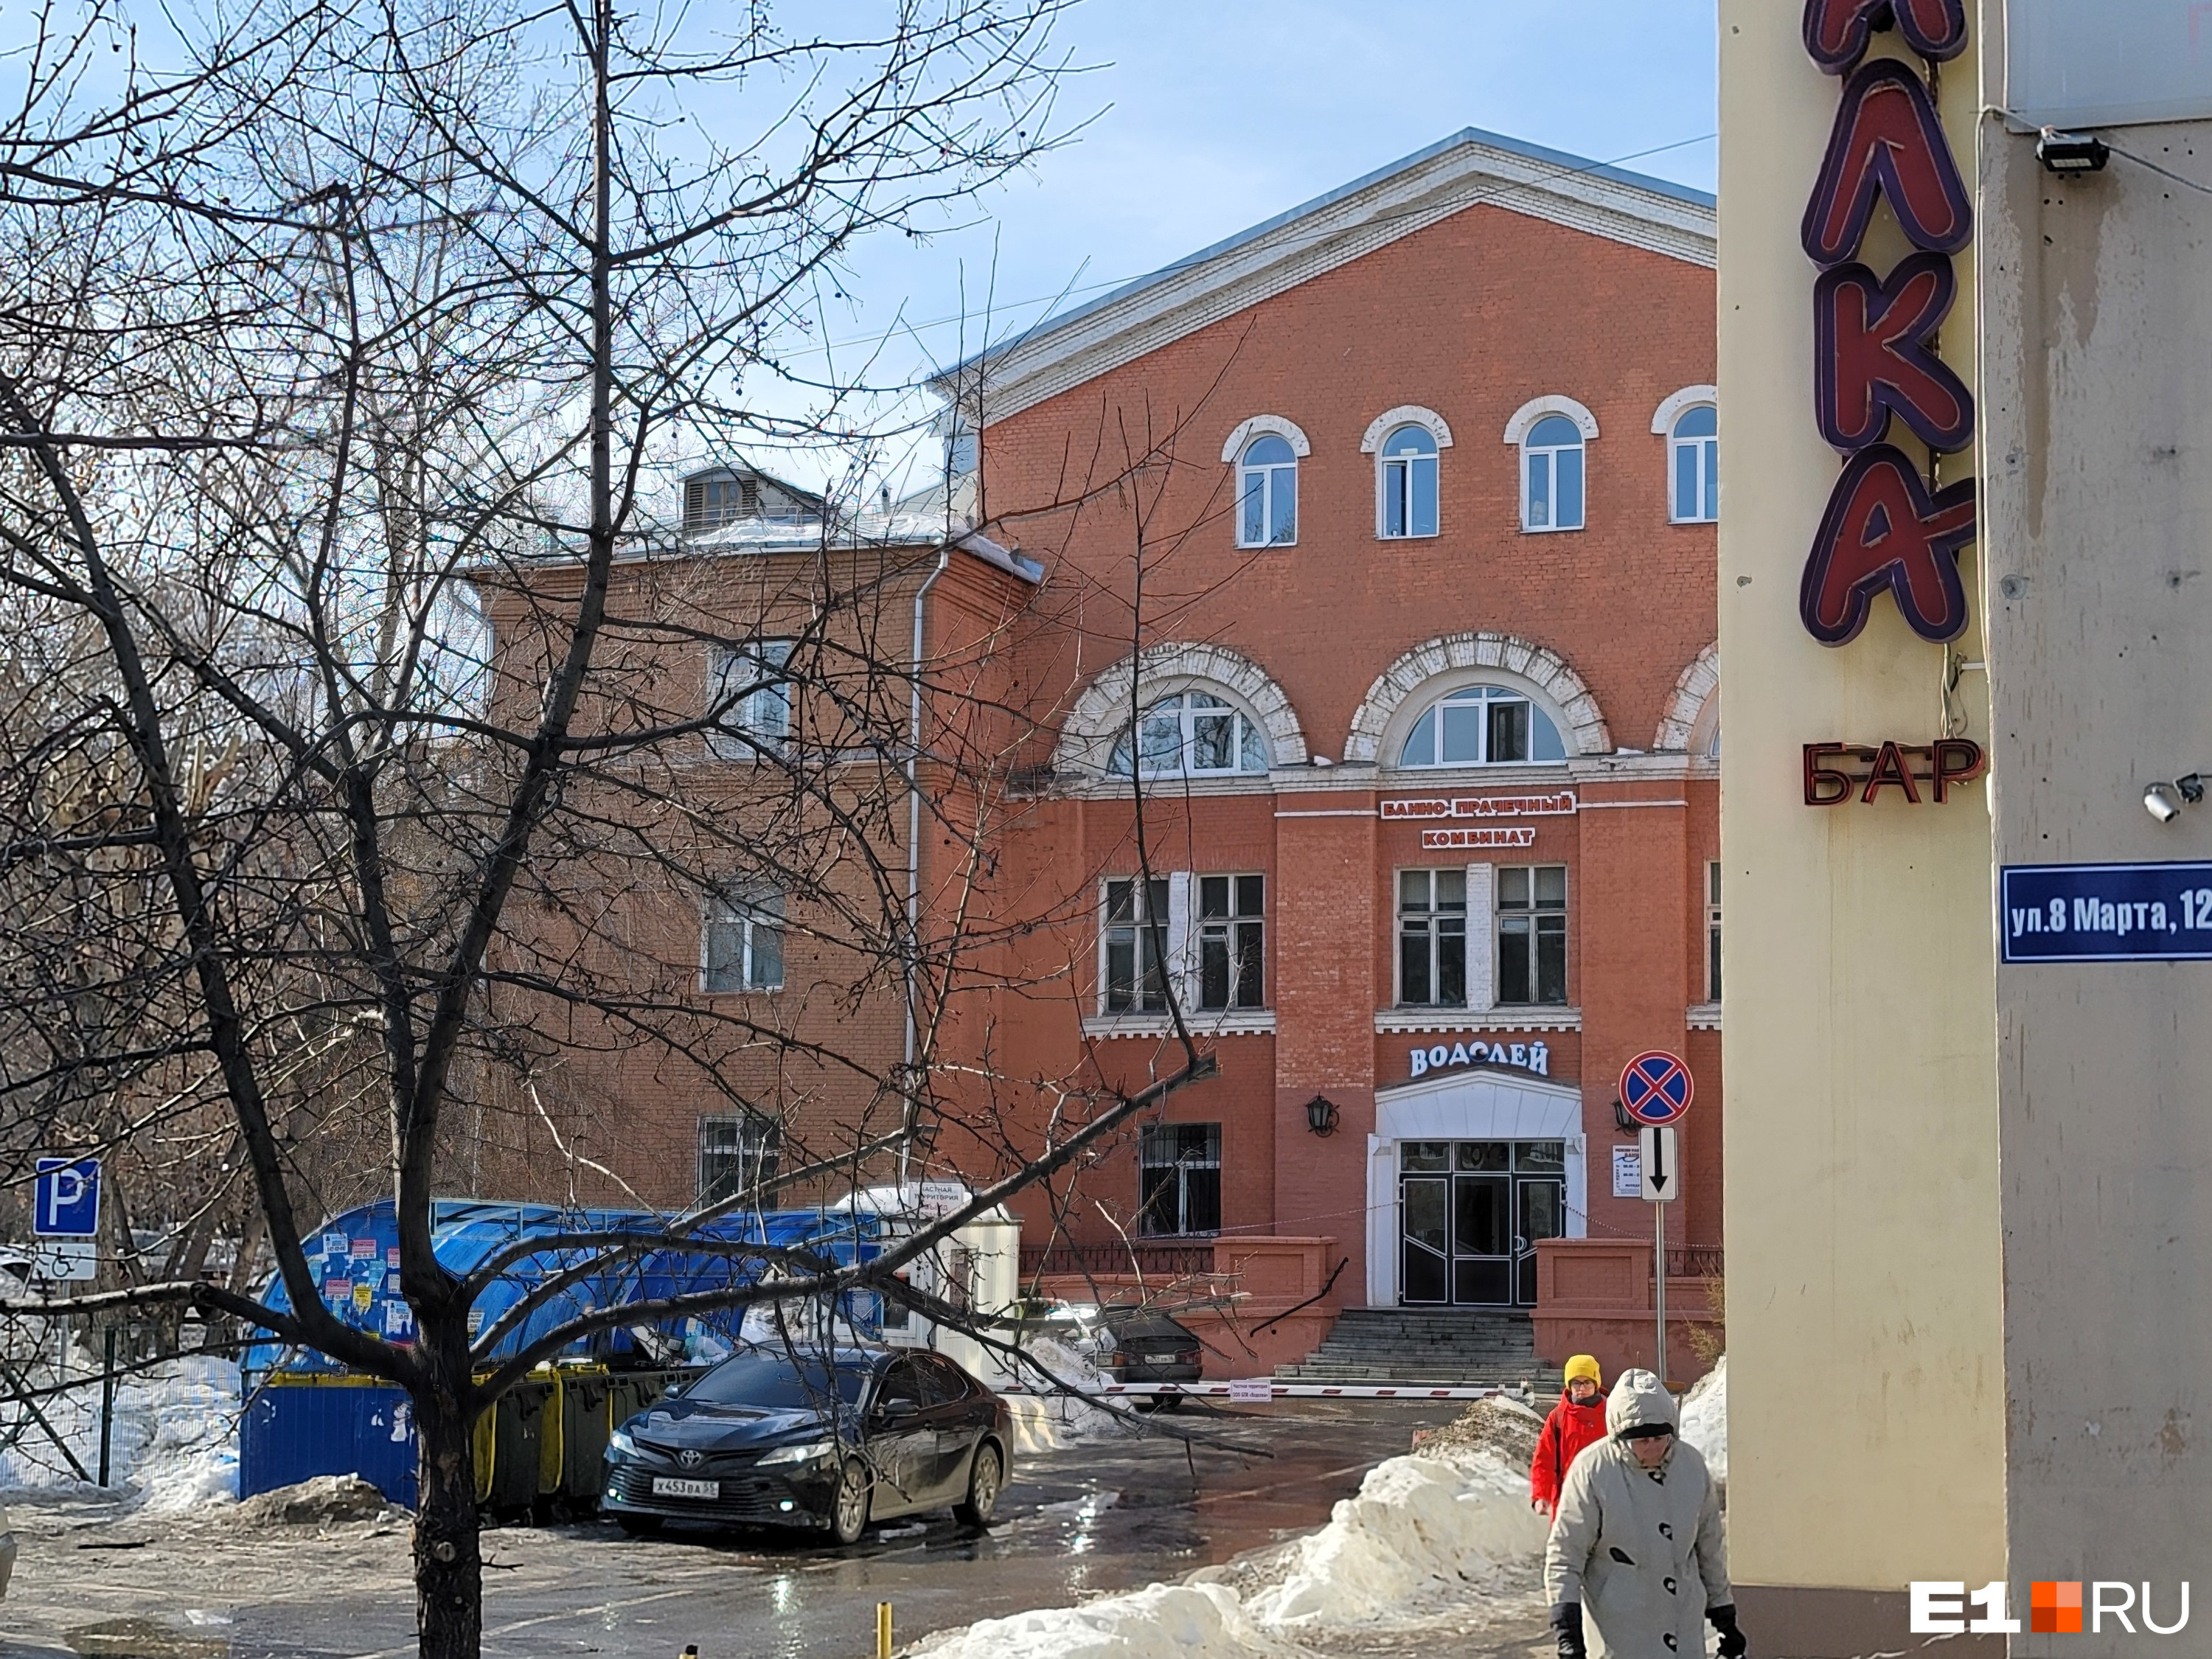 Воткнут ЖК «С легким паром»? Знаменитые бани, которые закрылись в центре Екатеринбурга, купил известный застройщик